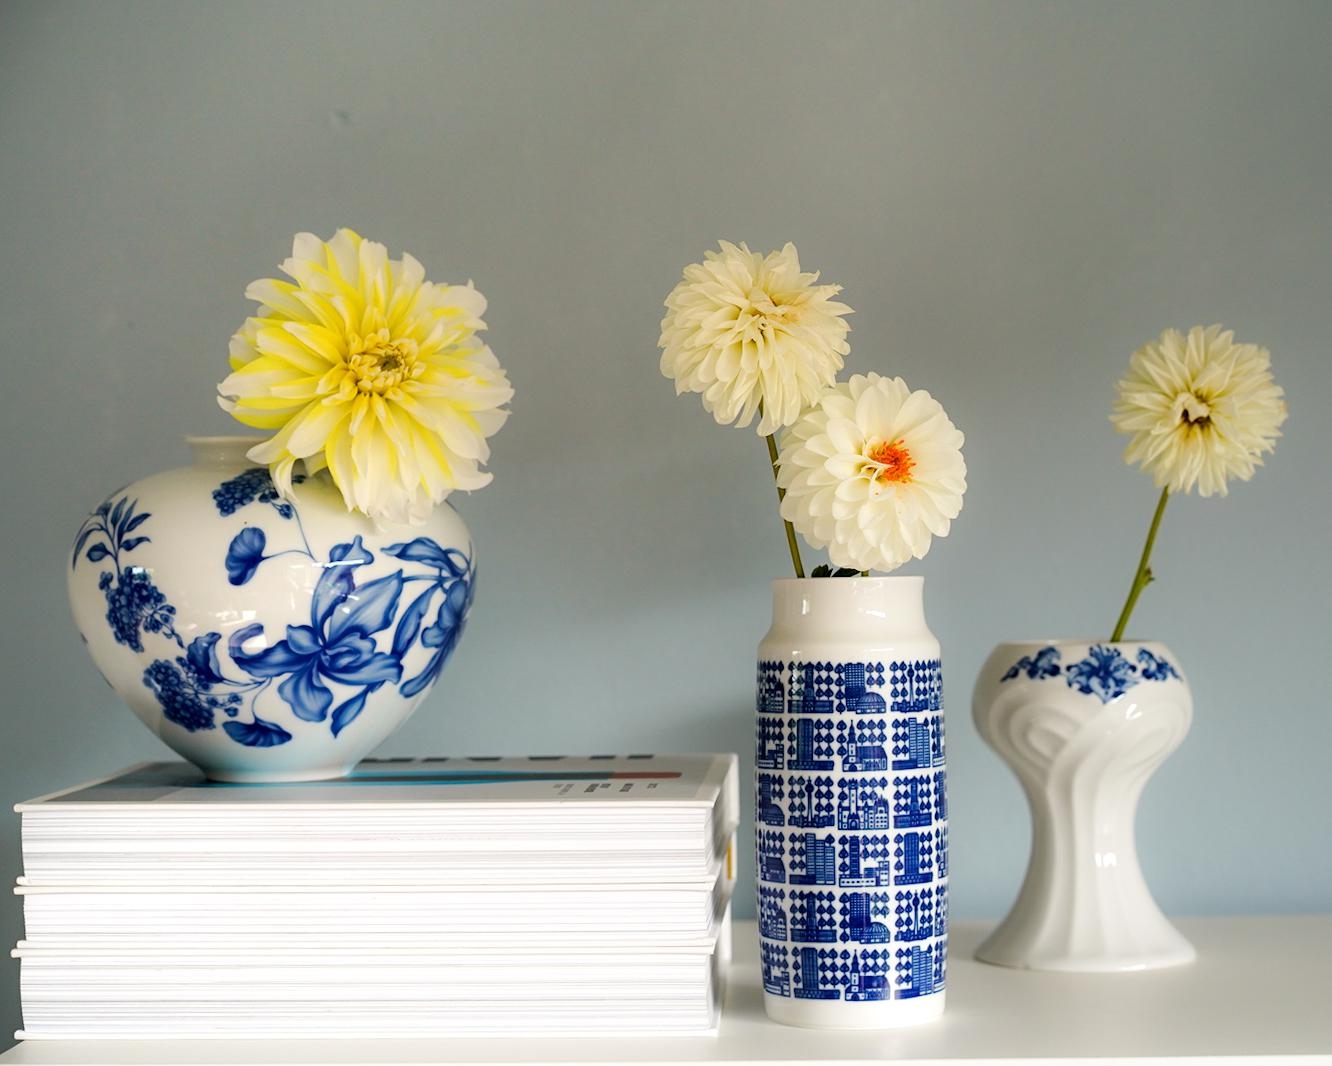 Große Vasenliebe für die Vasen von Weimar Porzellan #vasen #dahlien #blumen #freshflowerfriday